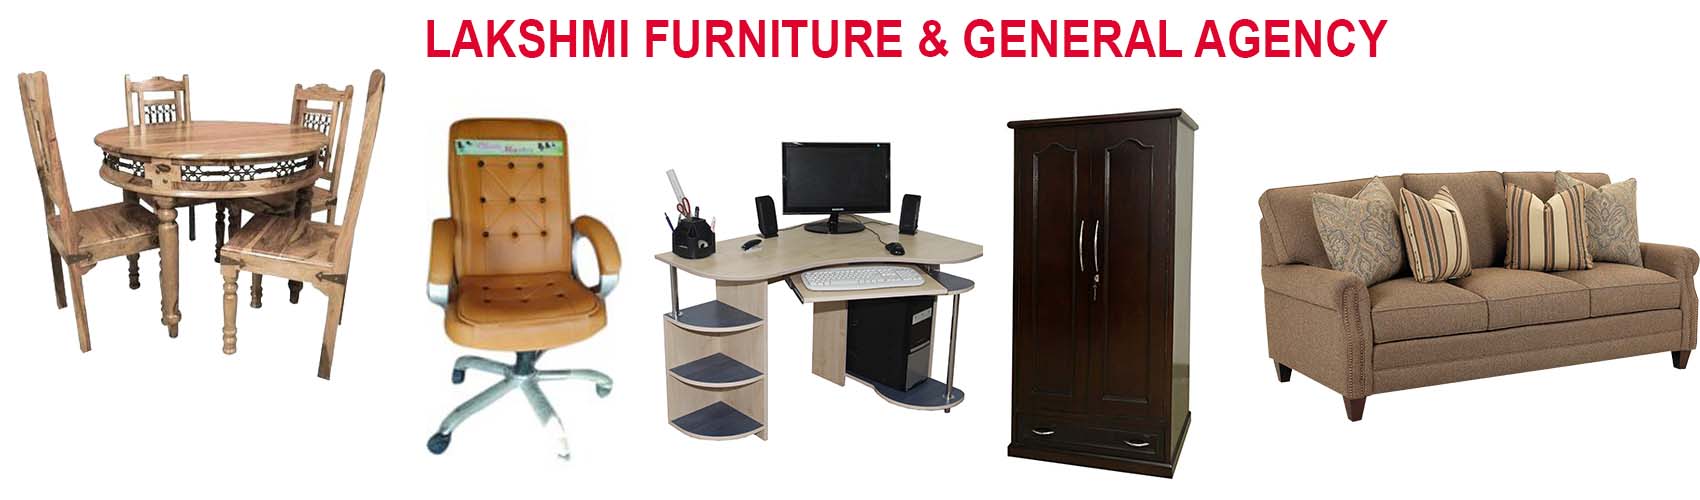 Lakshmi Furniture and General Agency